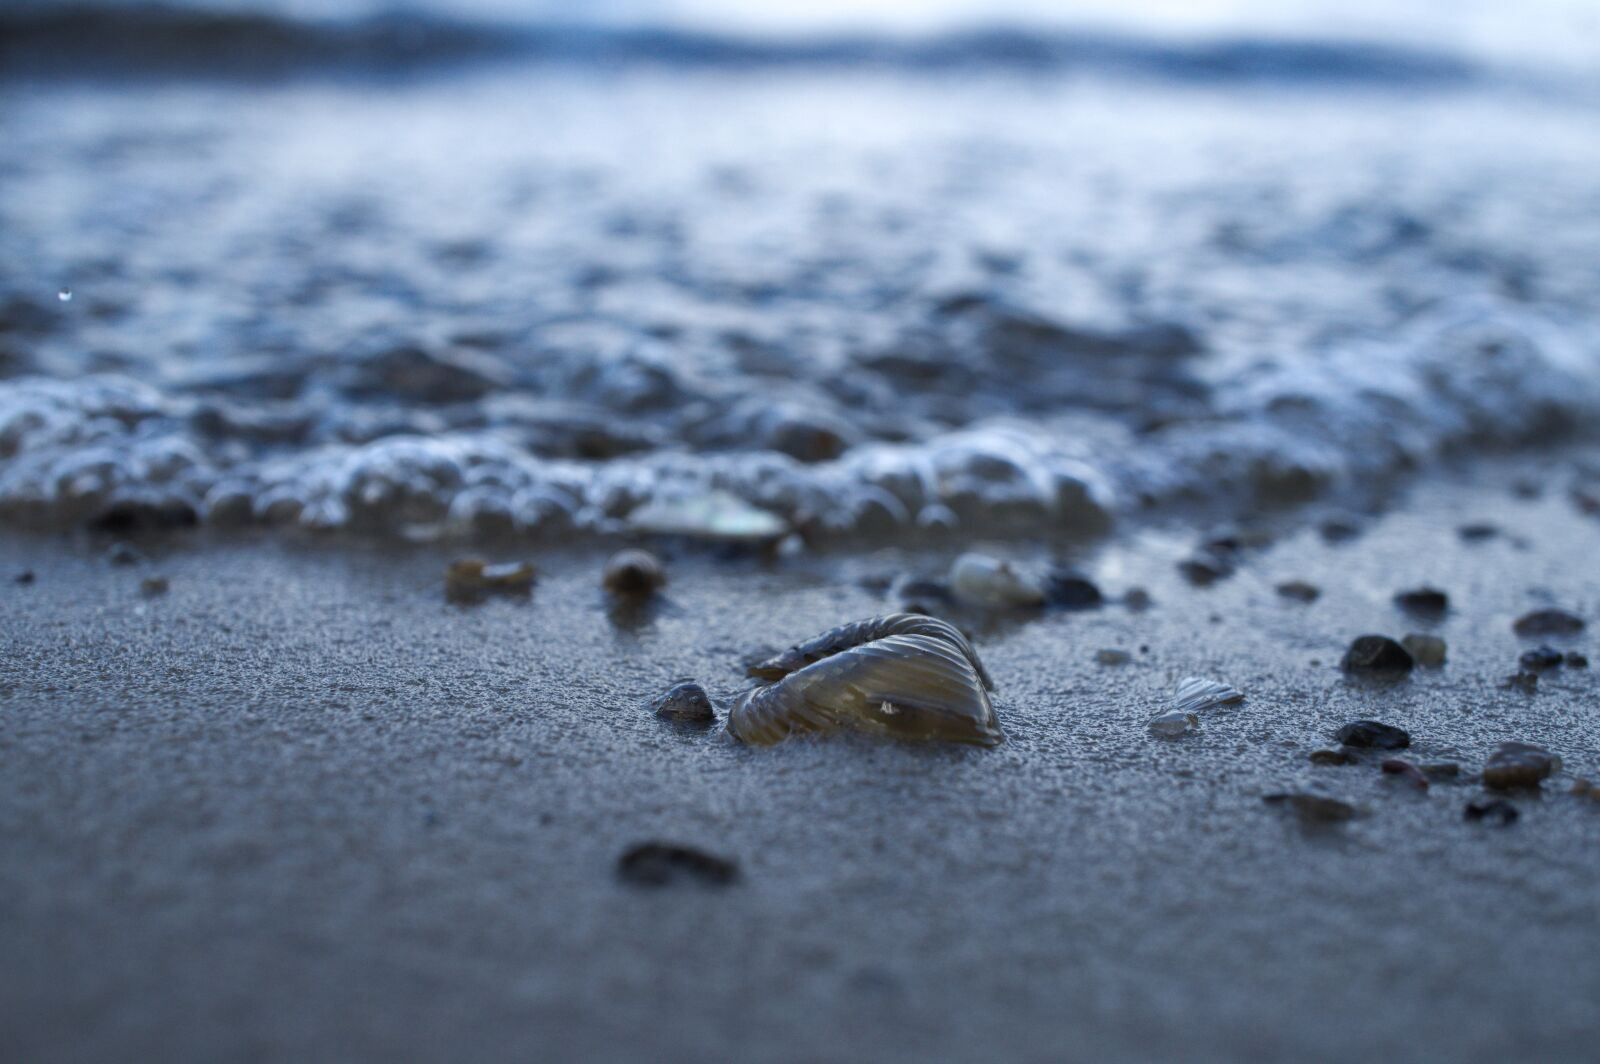 Sony E 30mm F3.5 Macro sample photo. Beach, water, shell photography